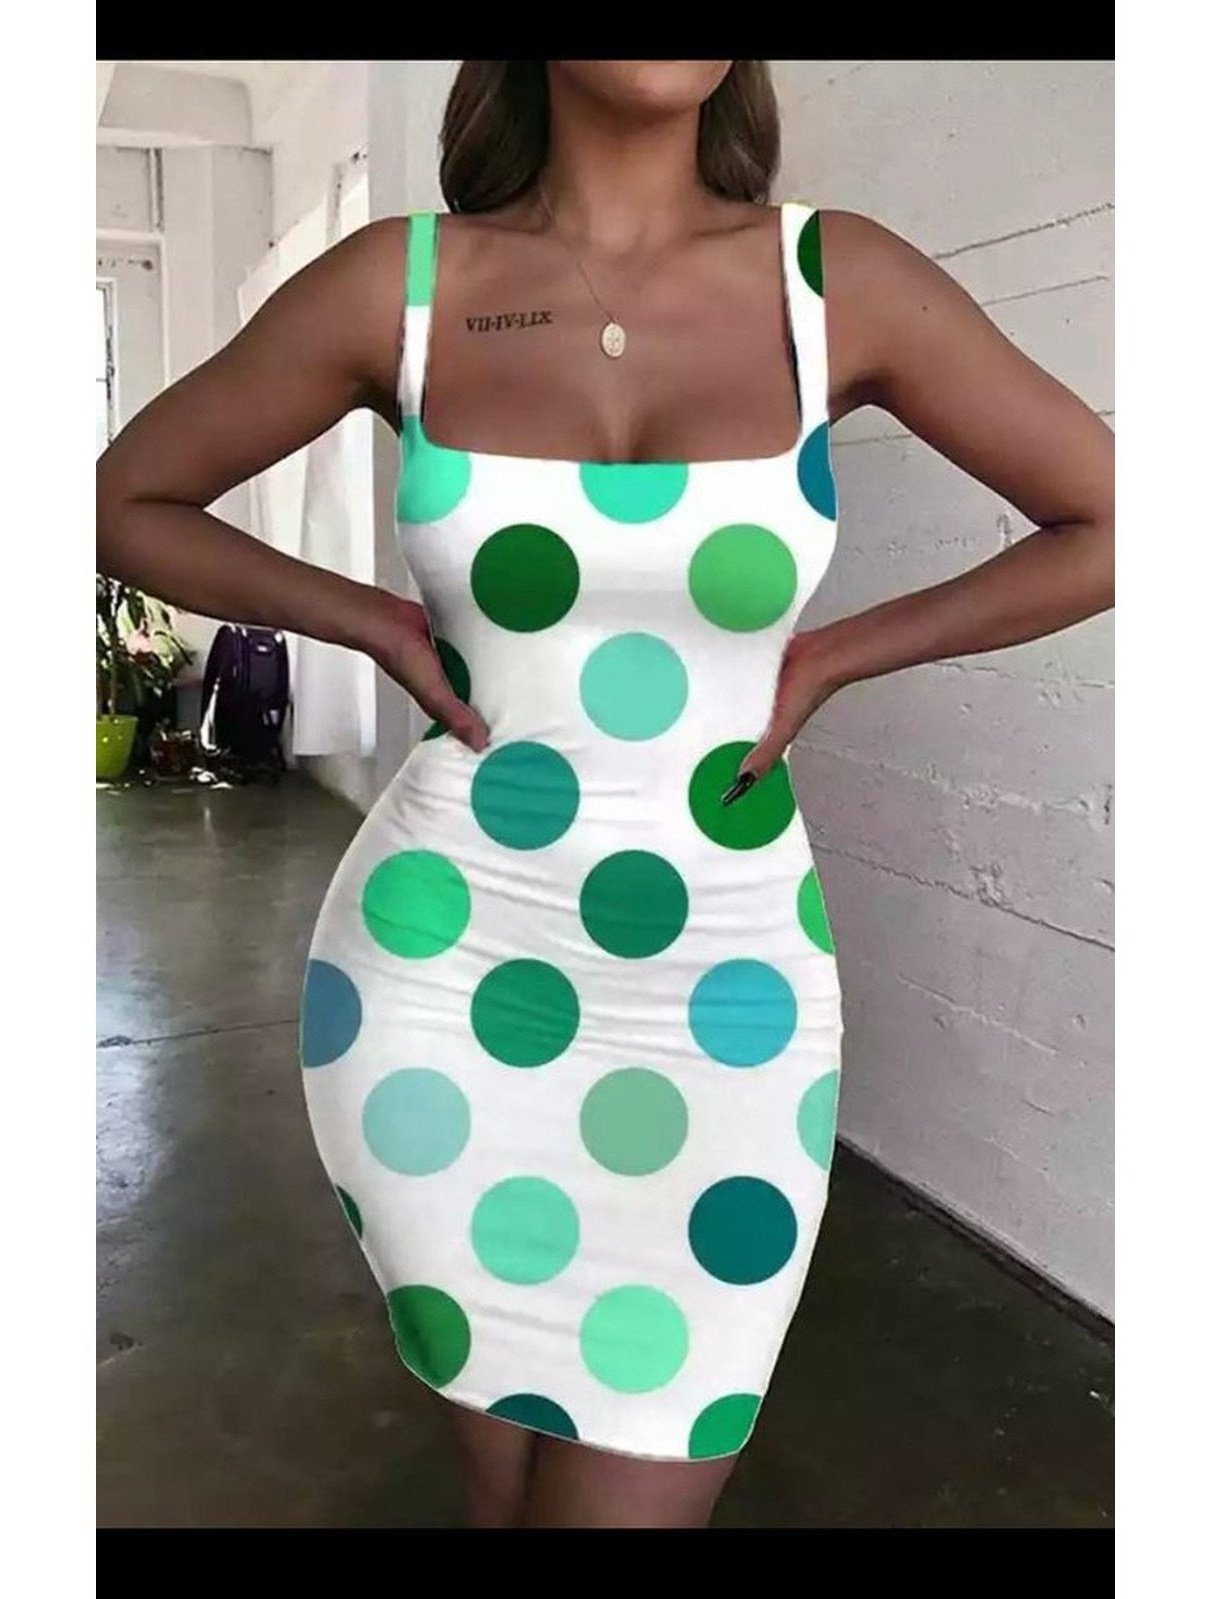 Short polka dot tube dress (Many Colors) (Many sizes)